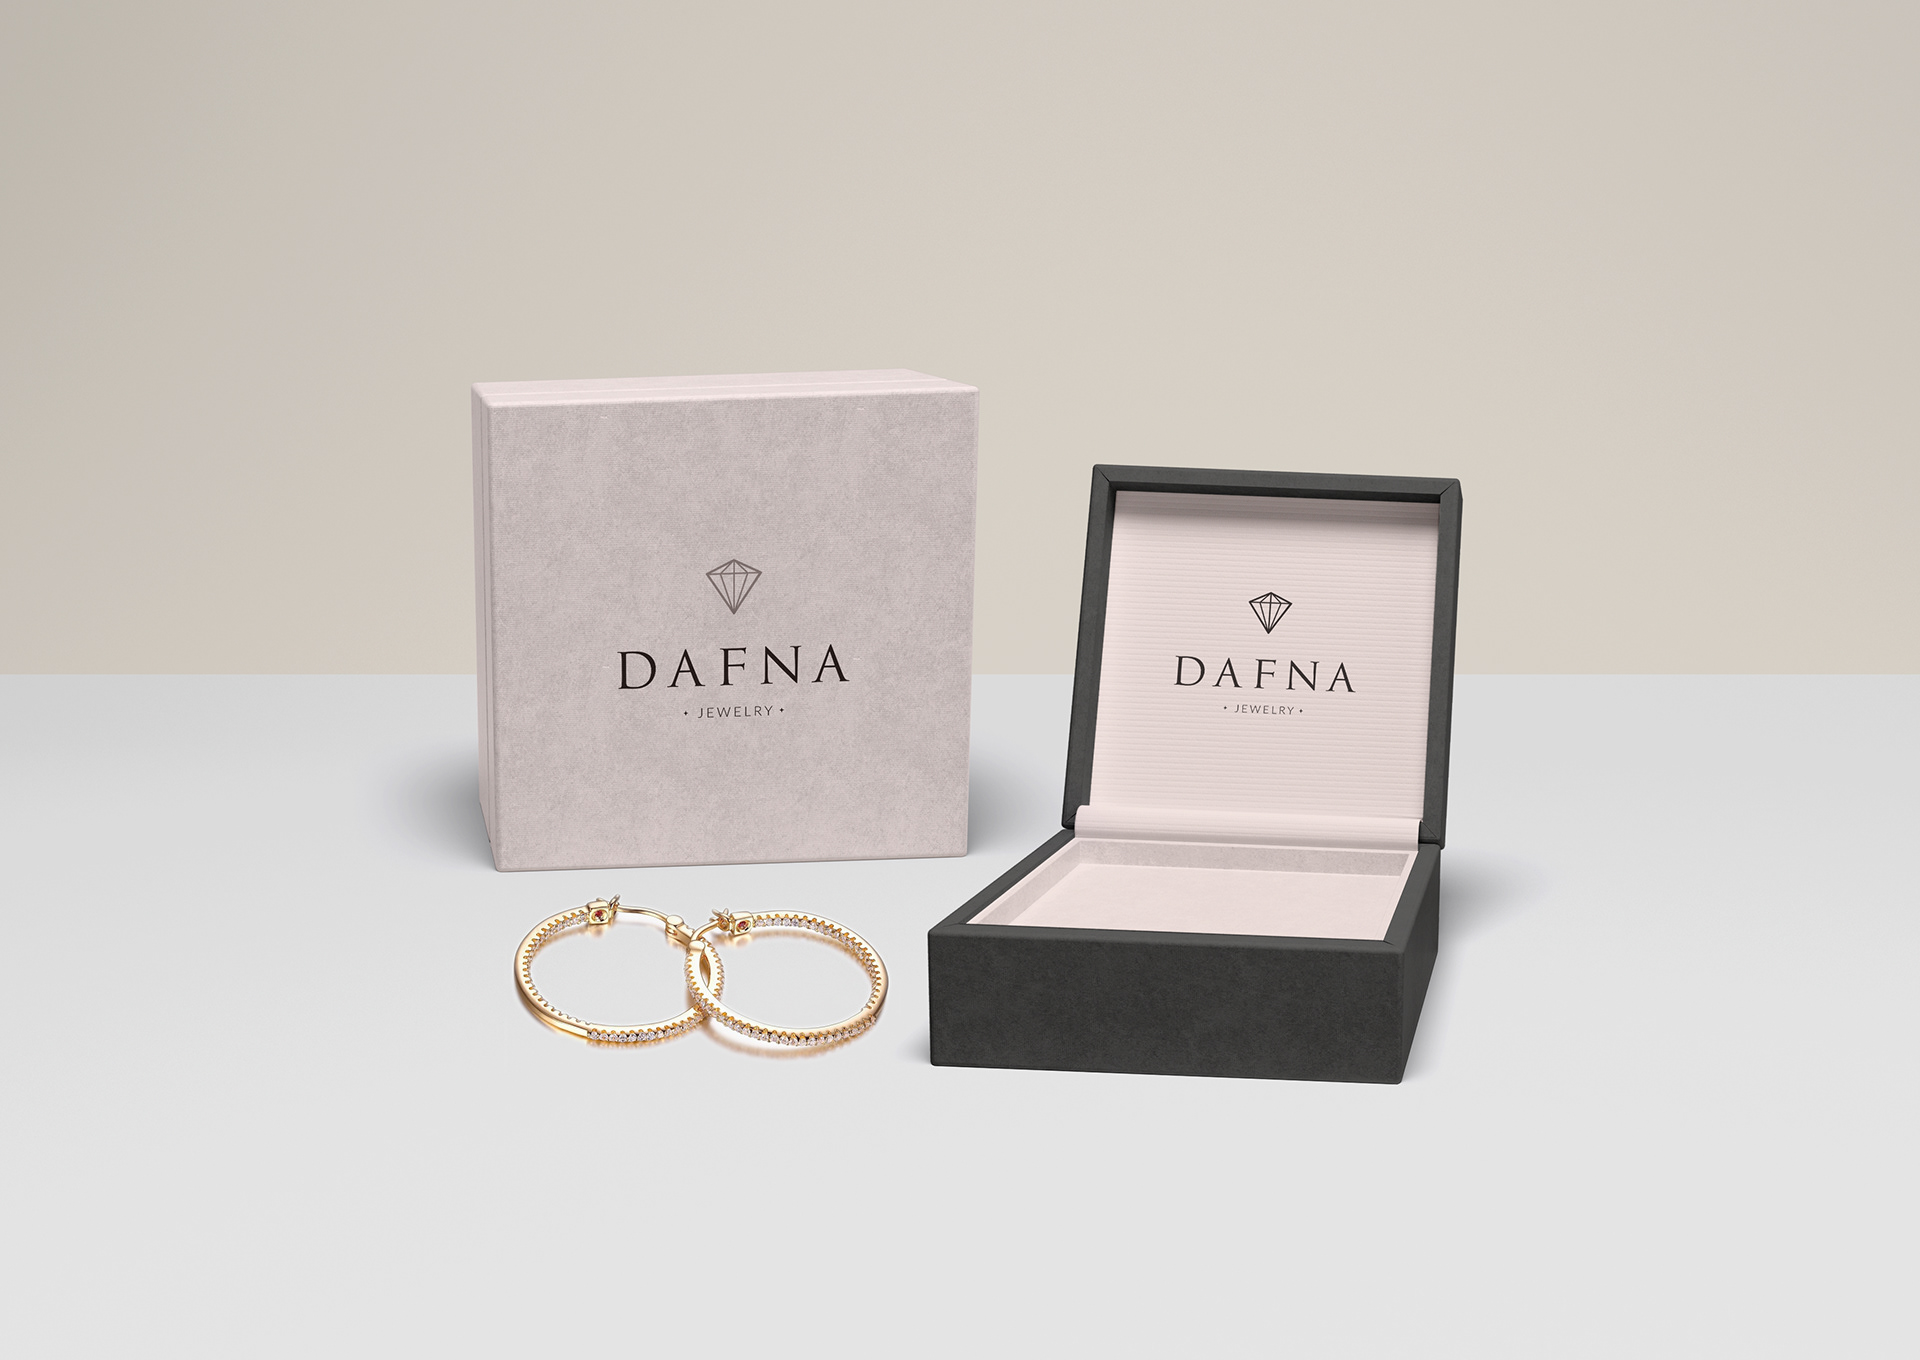 Tatiana K - Dafna Jewelry Brand Identity Concept